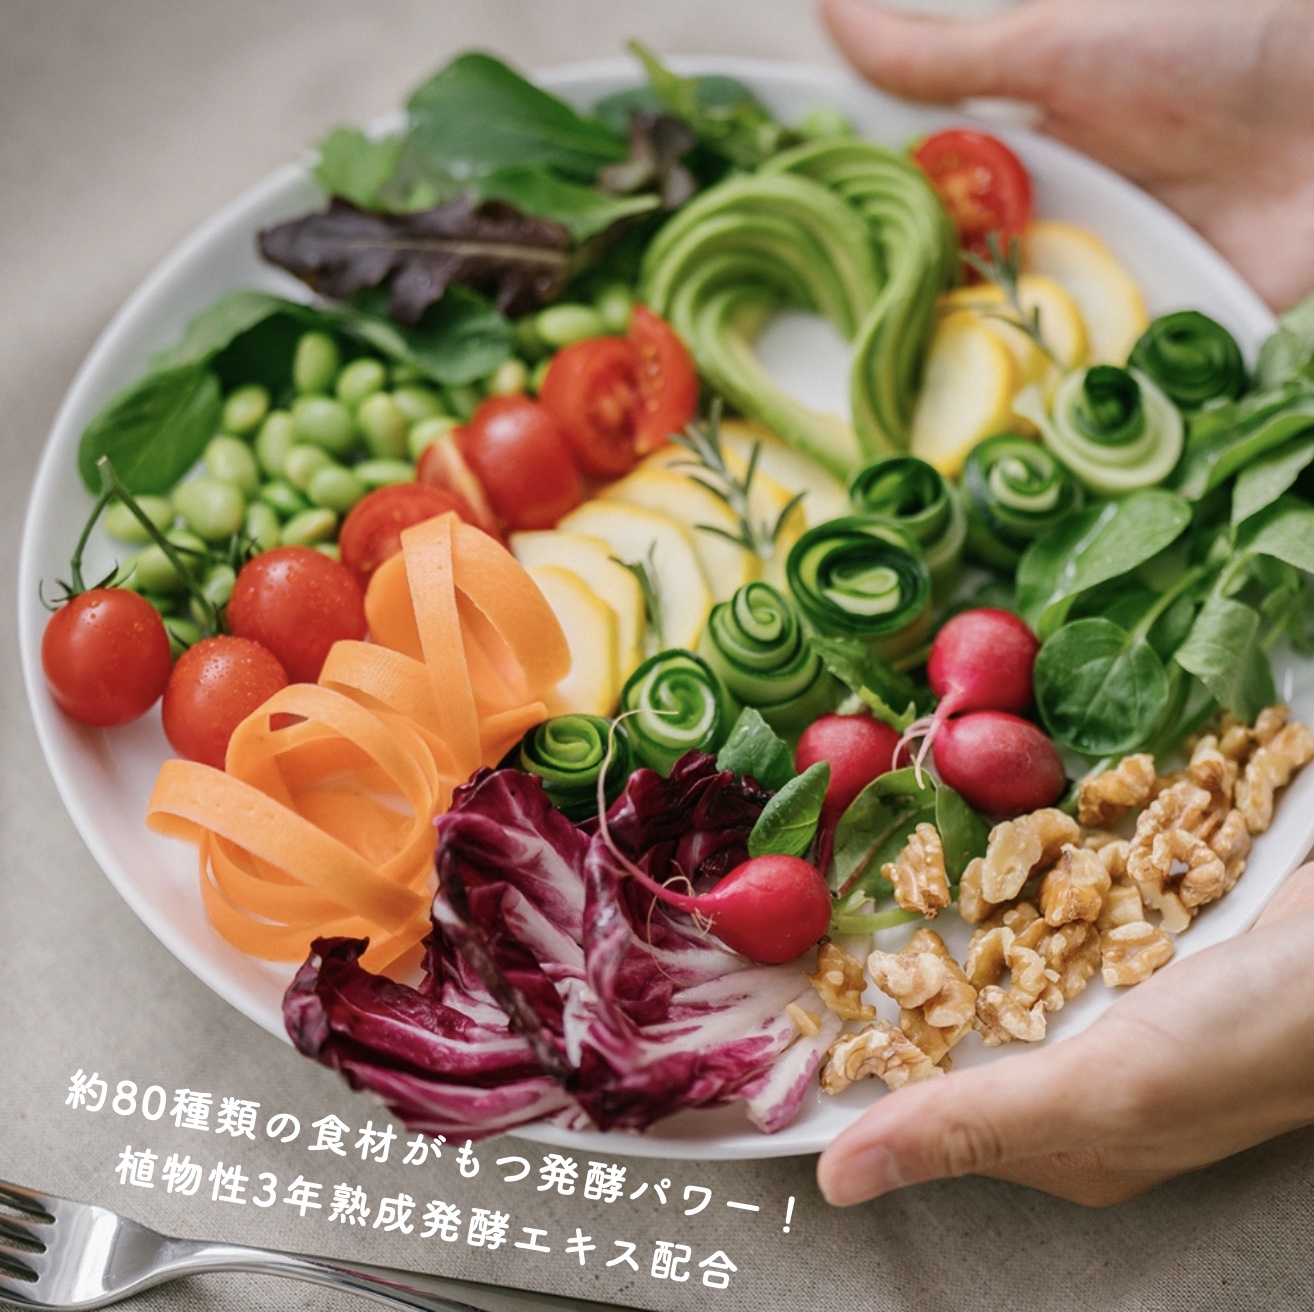 酵素がとれる生野菜サラダのイメージ